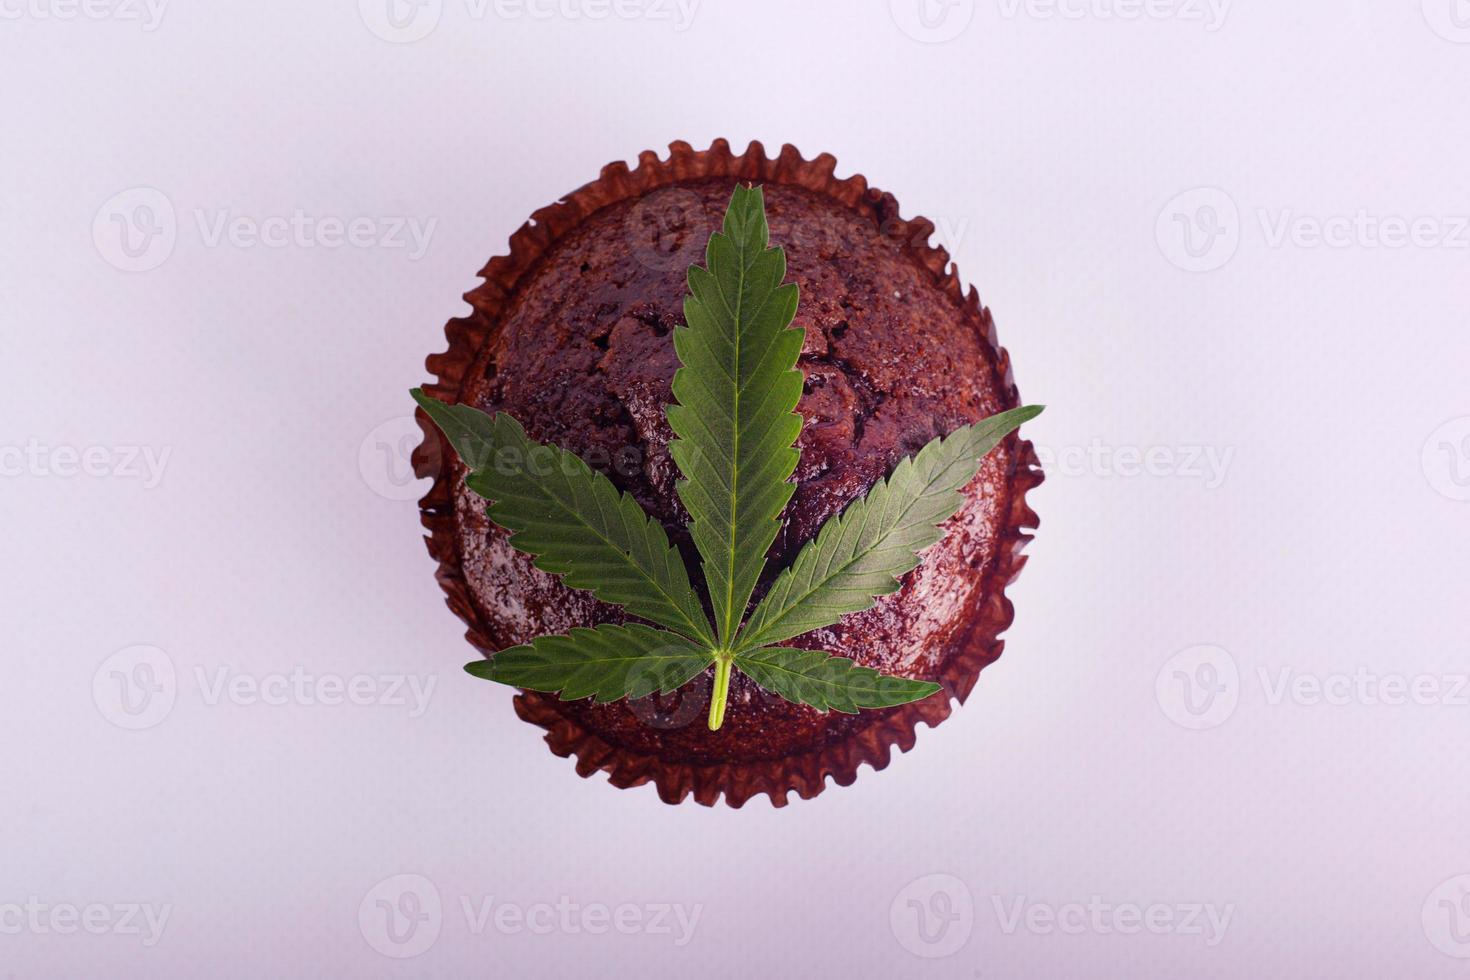 Schokoladenmuffin und grünes Marihuana-Blatt foto